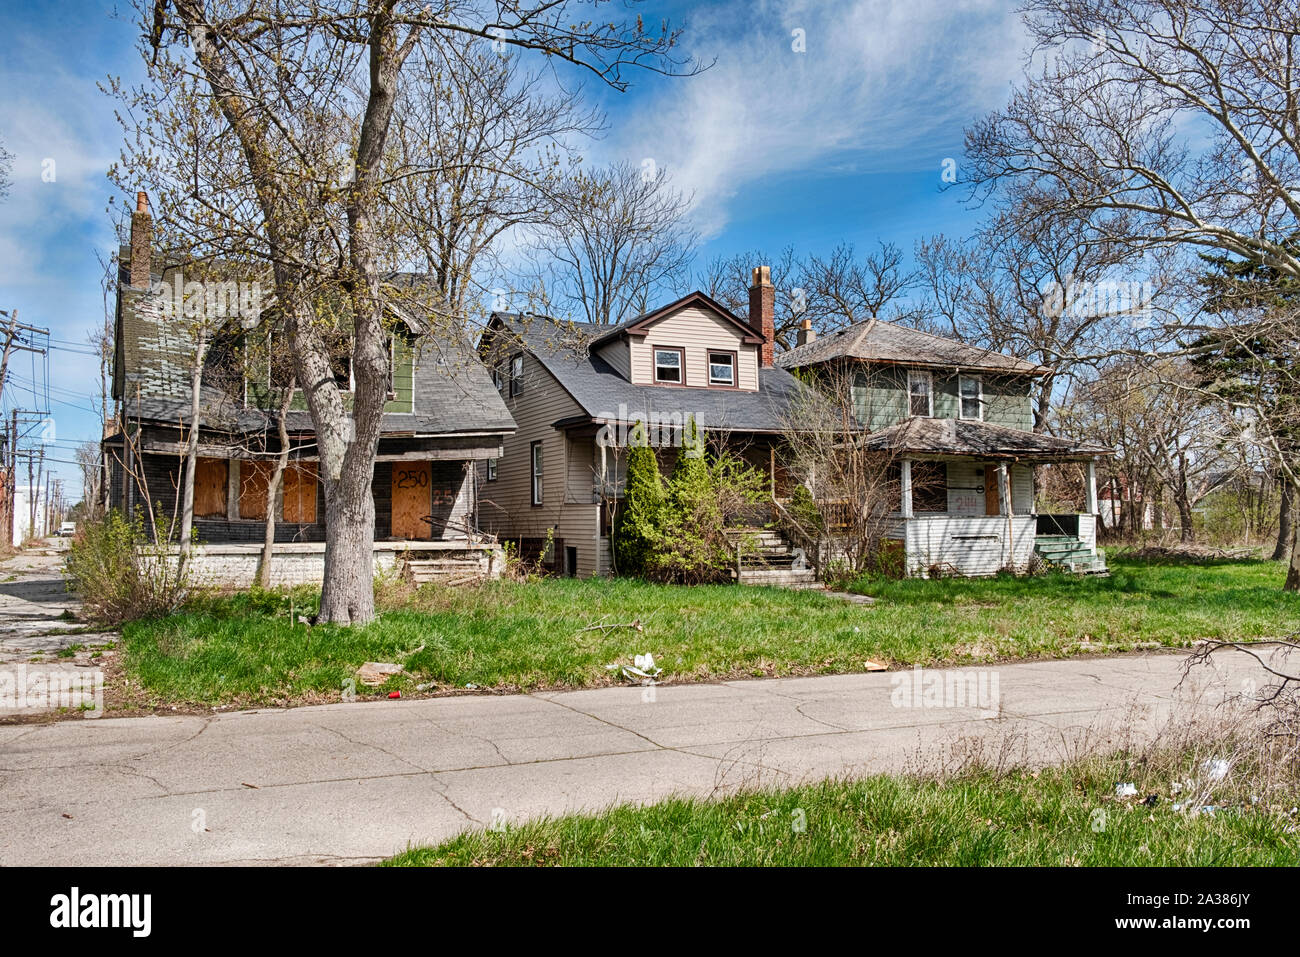 DETROIT, Michigan - Aprile 27, 2019: tre vecchie case sono state abbandonate e vengono gradualmente cade a pezzi in un quartiere Detoit. Foto Stock